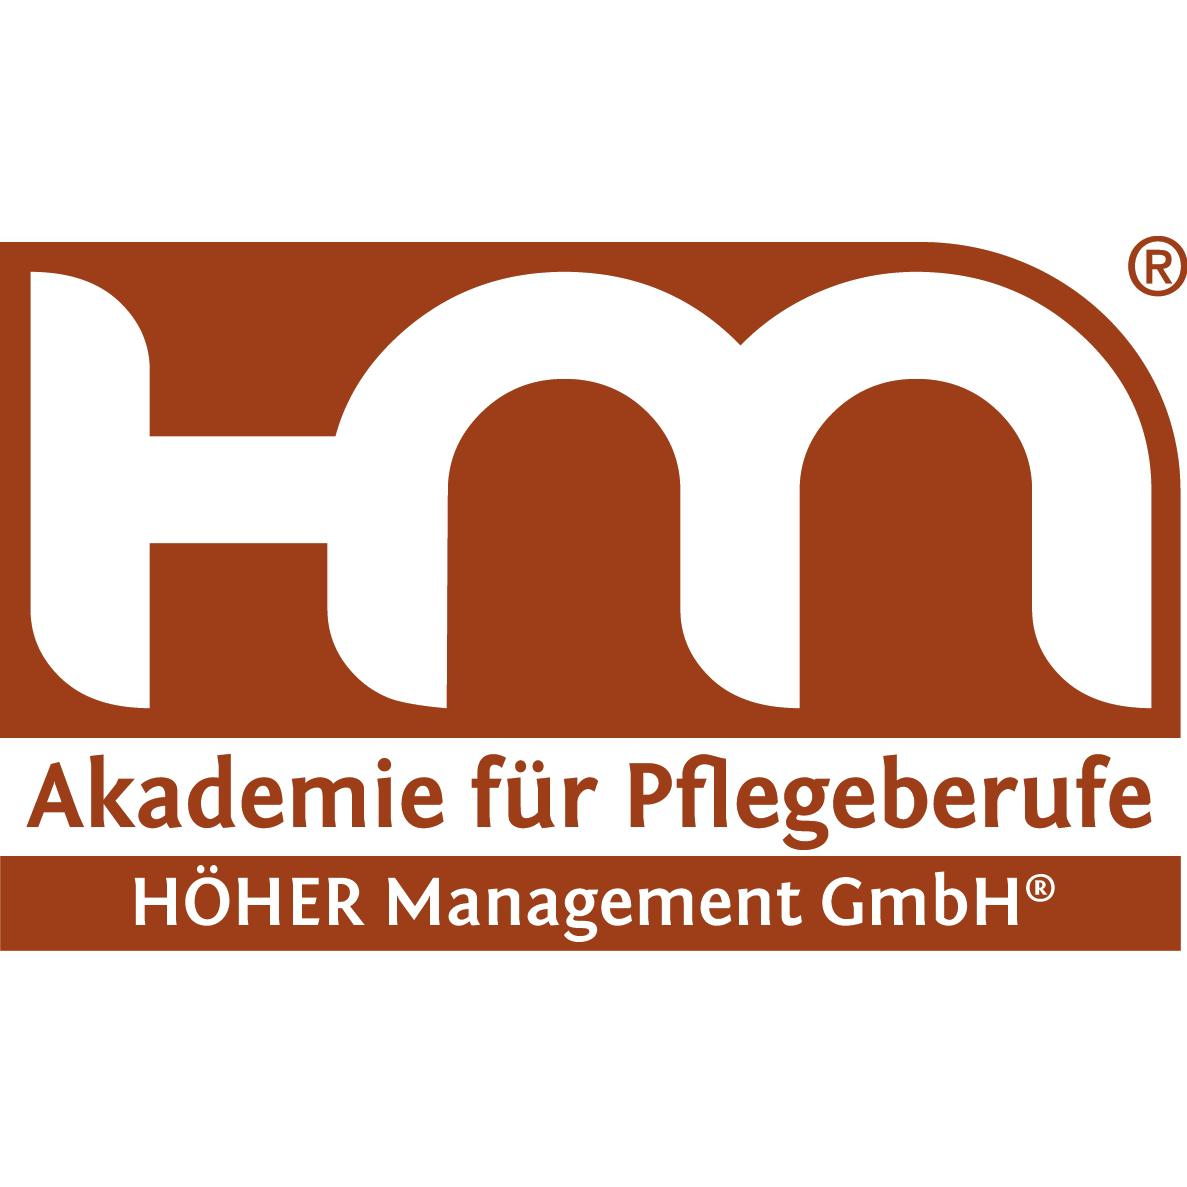 HÖHER Management GmbH & Co. KG. in Bitterfeld Wolfen - Logo